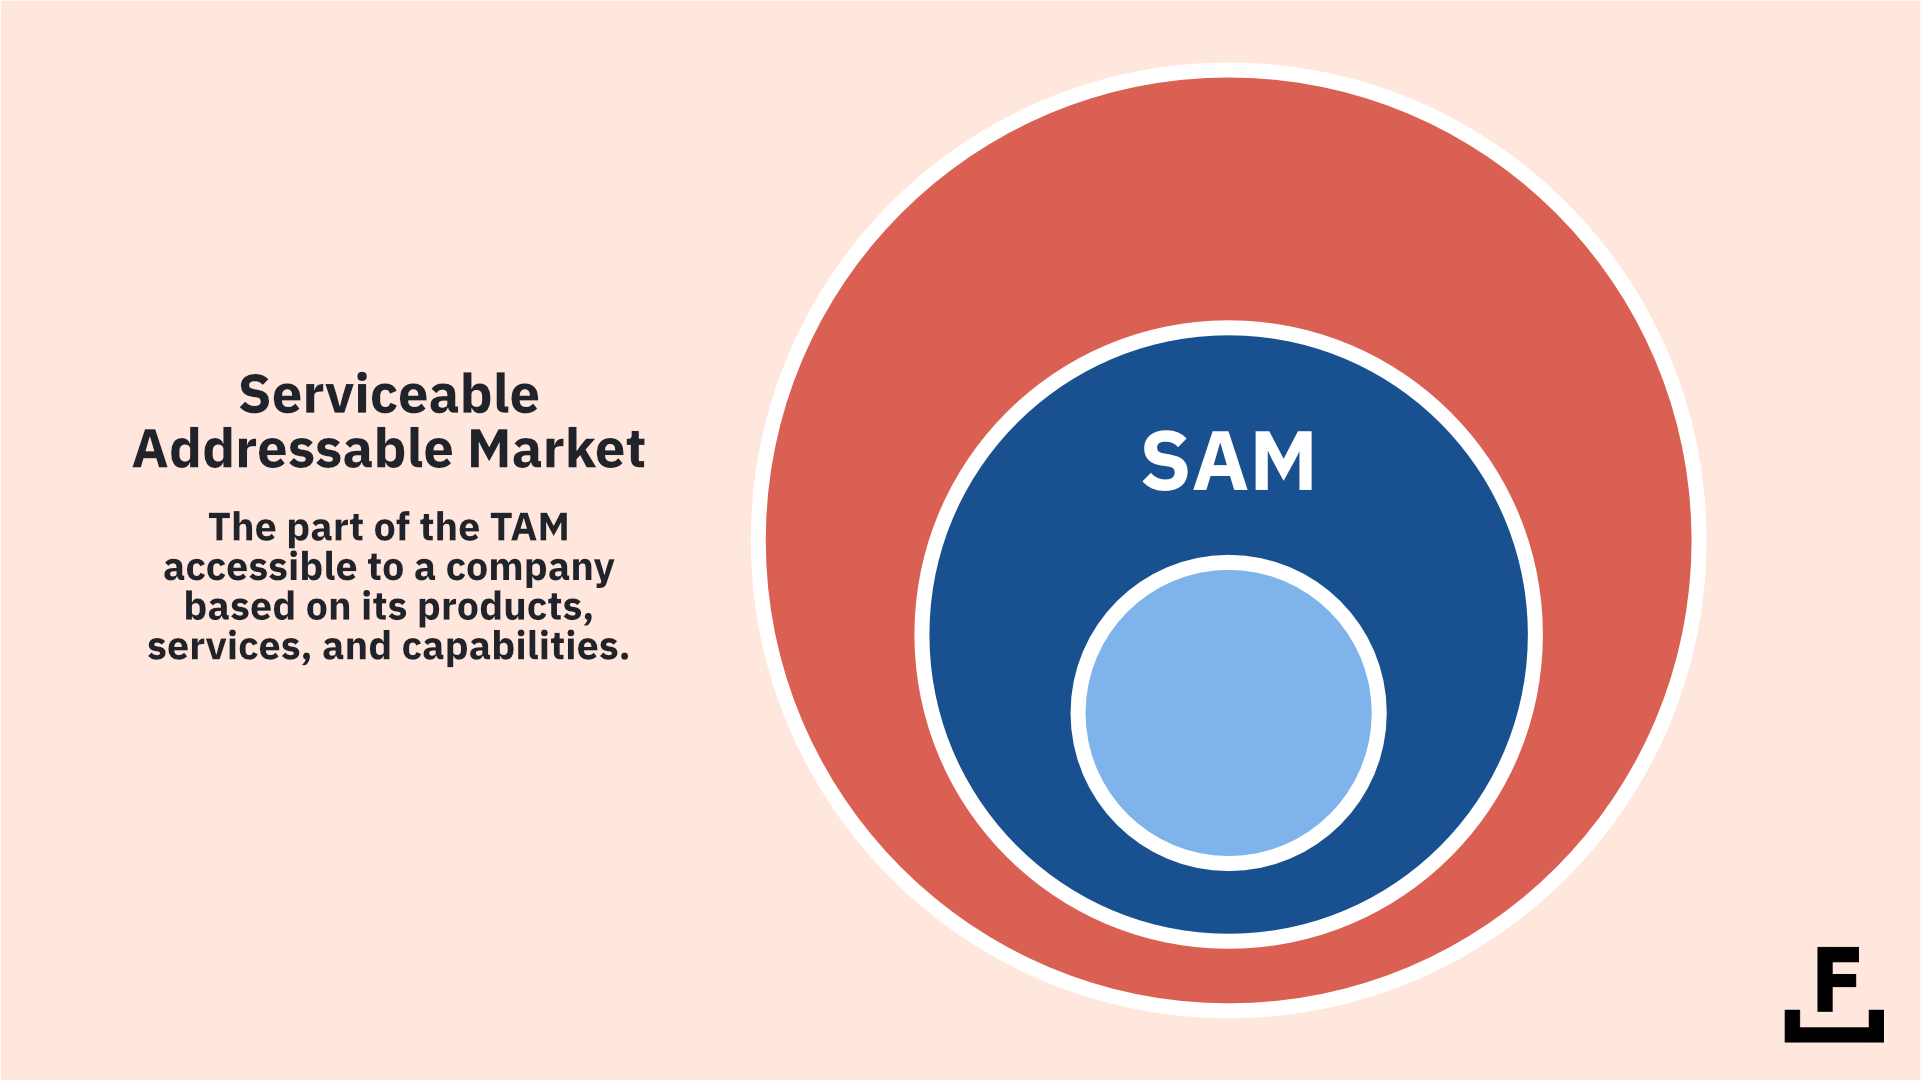 A diagram explaining what Serviceable Addressable Market (SAM) means